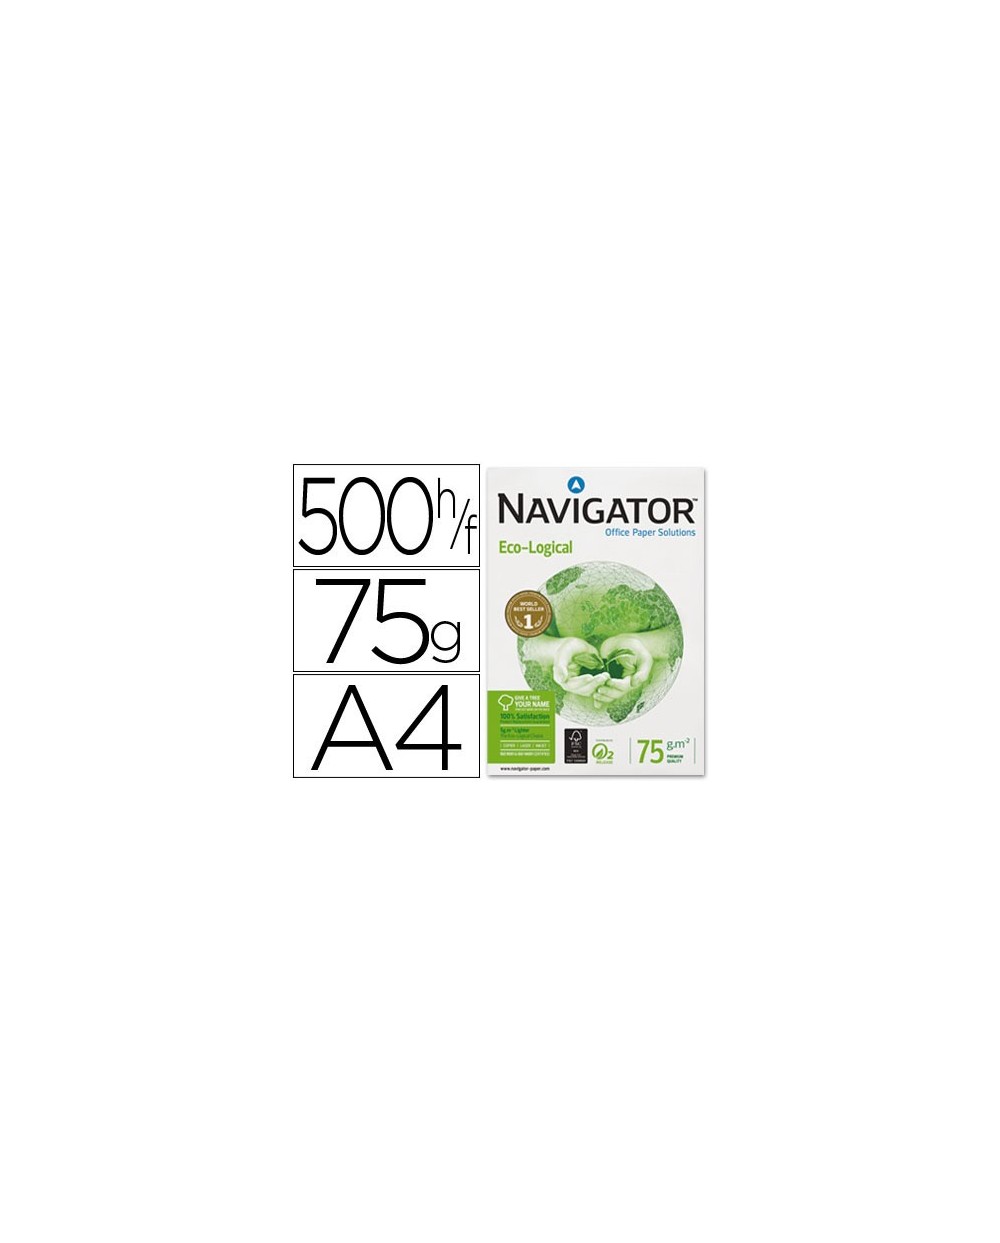 Papel fotocopiadora navigator eco logical din a4 75 gramos paquete de 500 hojas